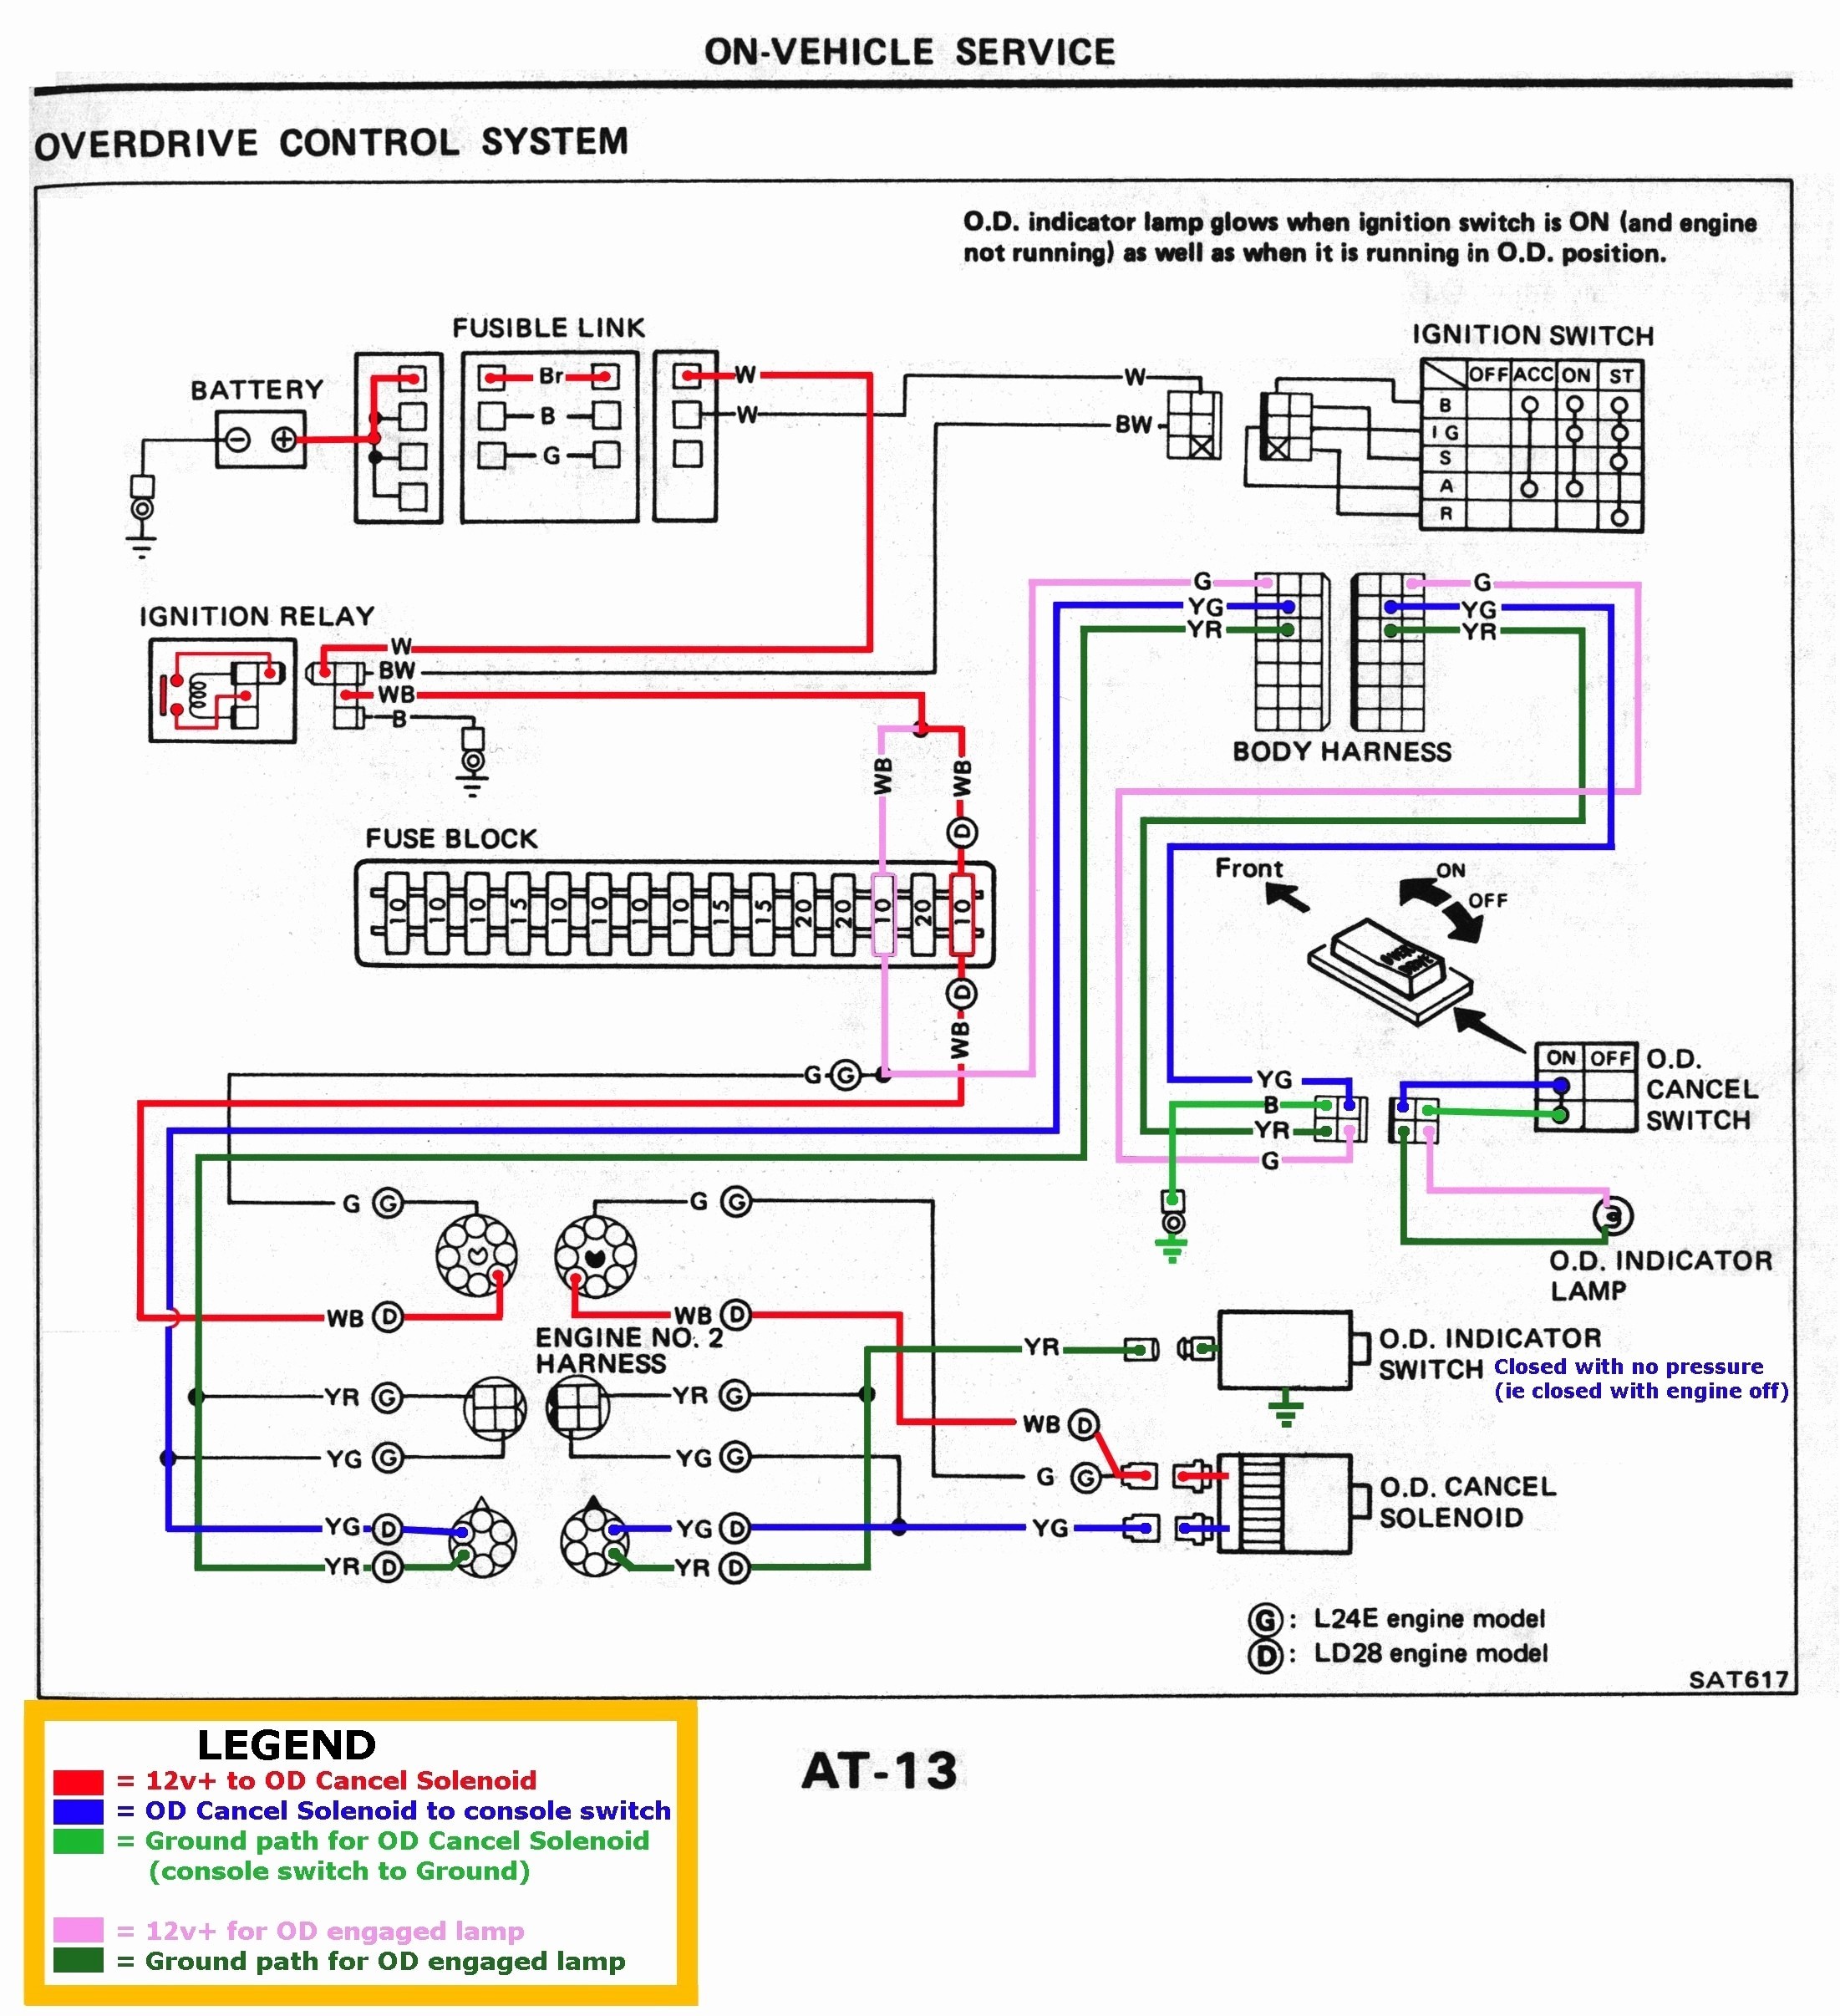 Diagram Of 4 Stroke Engine 2 Stroke Engine Diagram Of Diagram Of 4 Stroke Engine